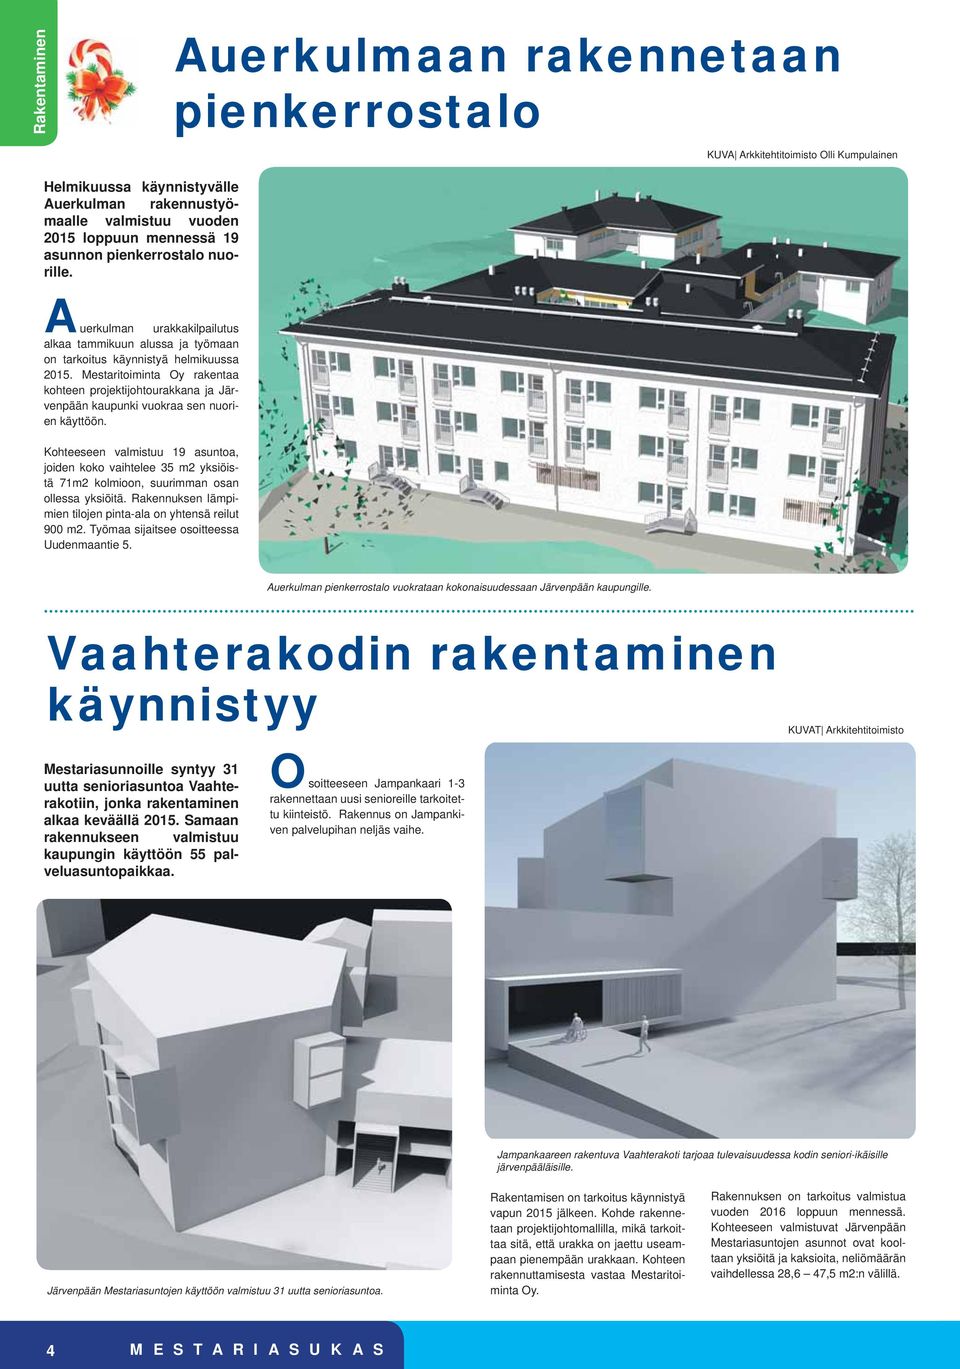 Mestaritoiminta Oy rakentaa kohteen projektijohtourakkana ja Järvenpään kaupunki vuokraa sen nuorien käyttöön.